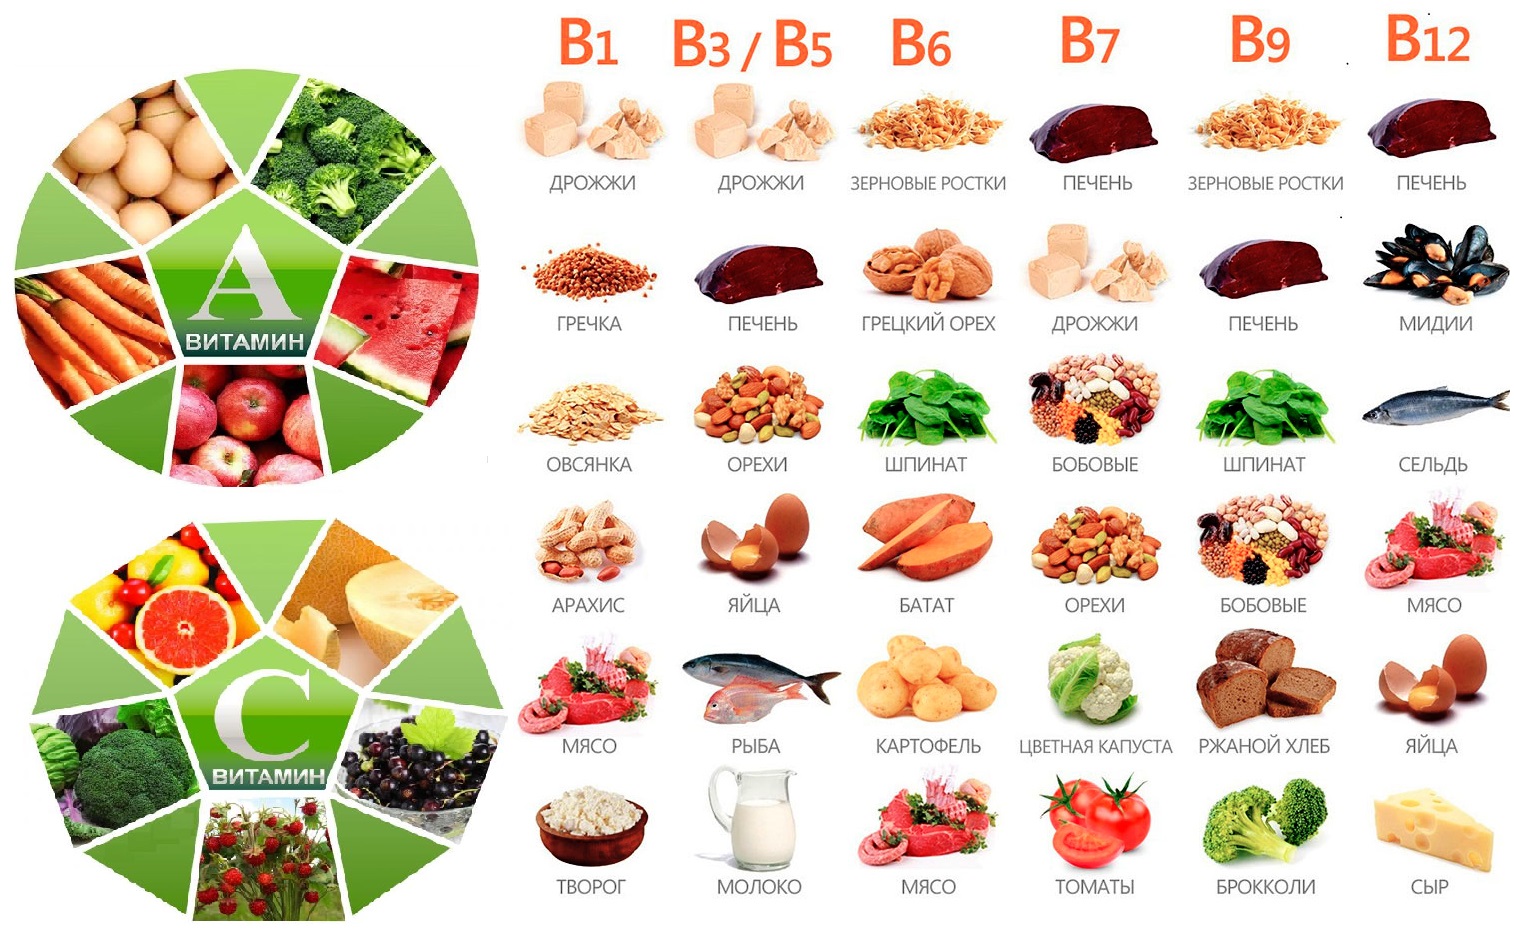 Что входит в витамин б